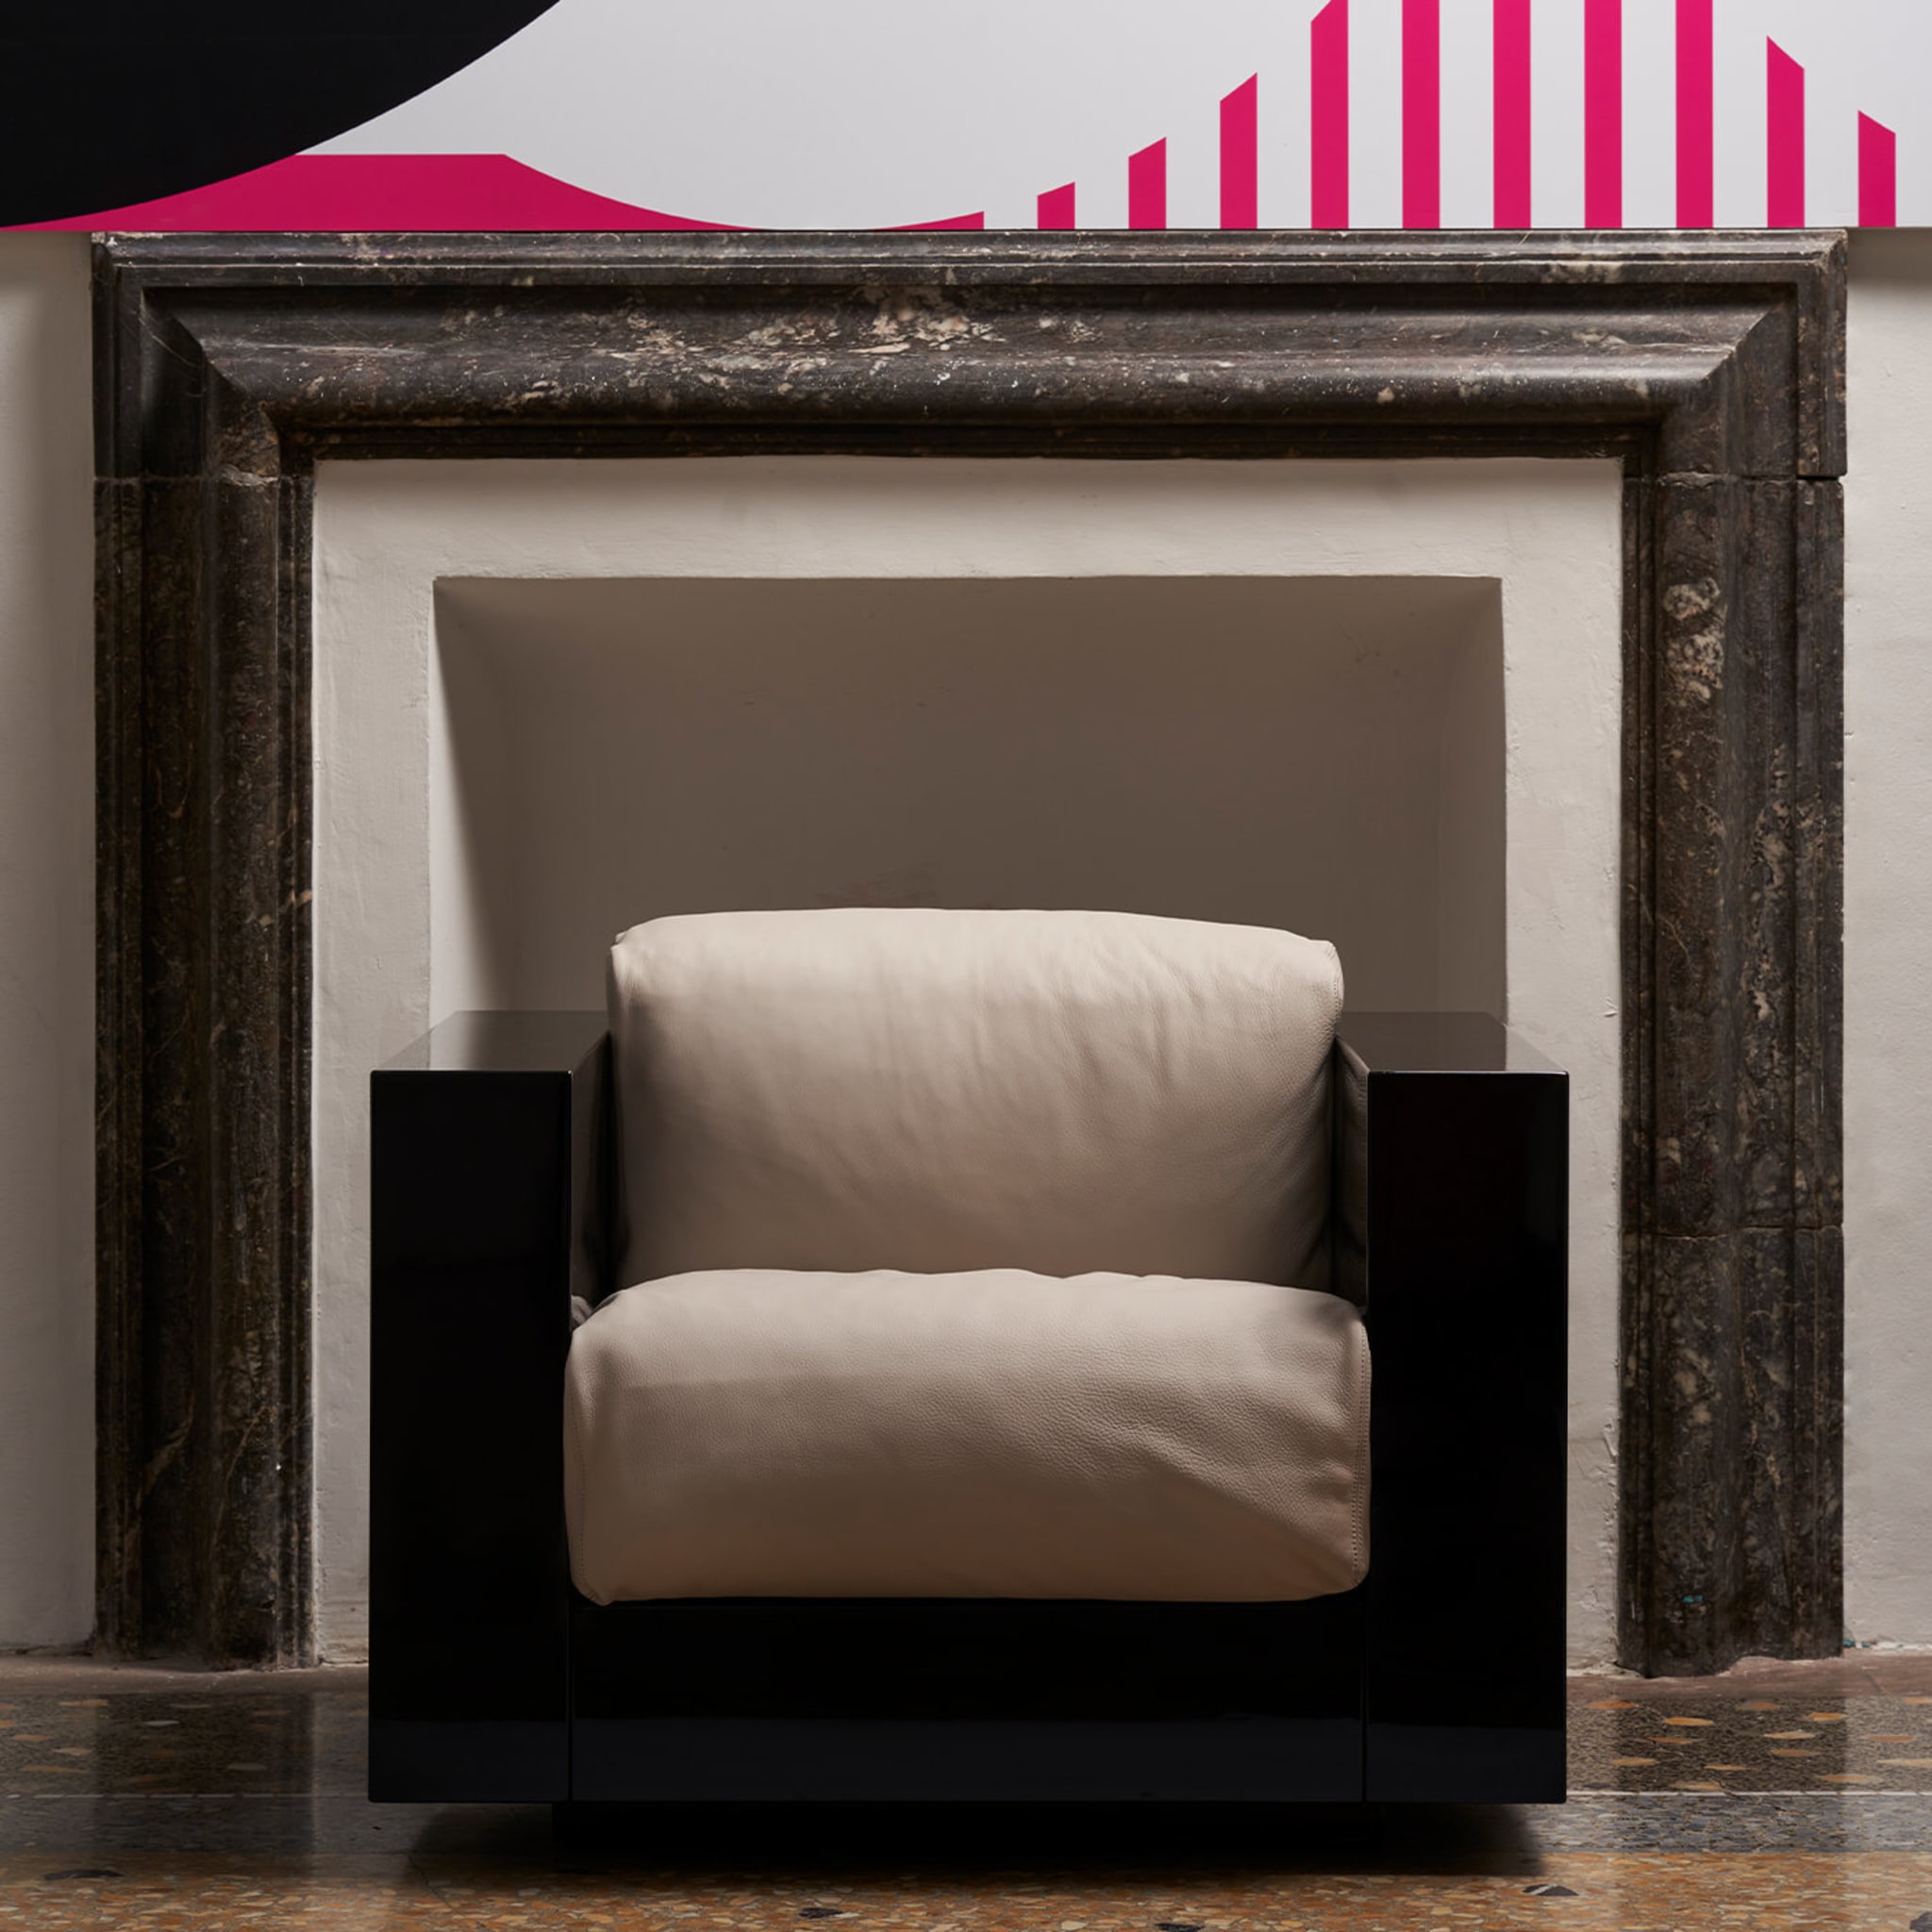 Saratoga White Armchair by Lella and Massimo Vignelli - Alternative view 2